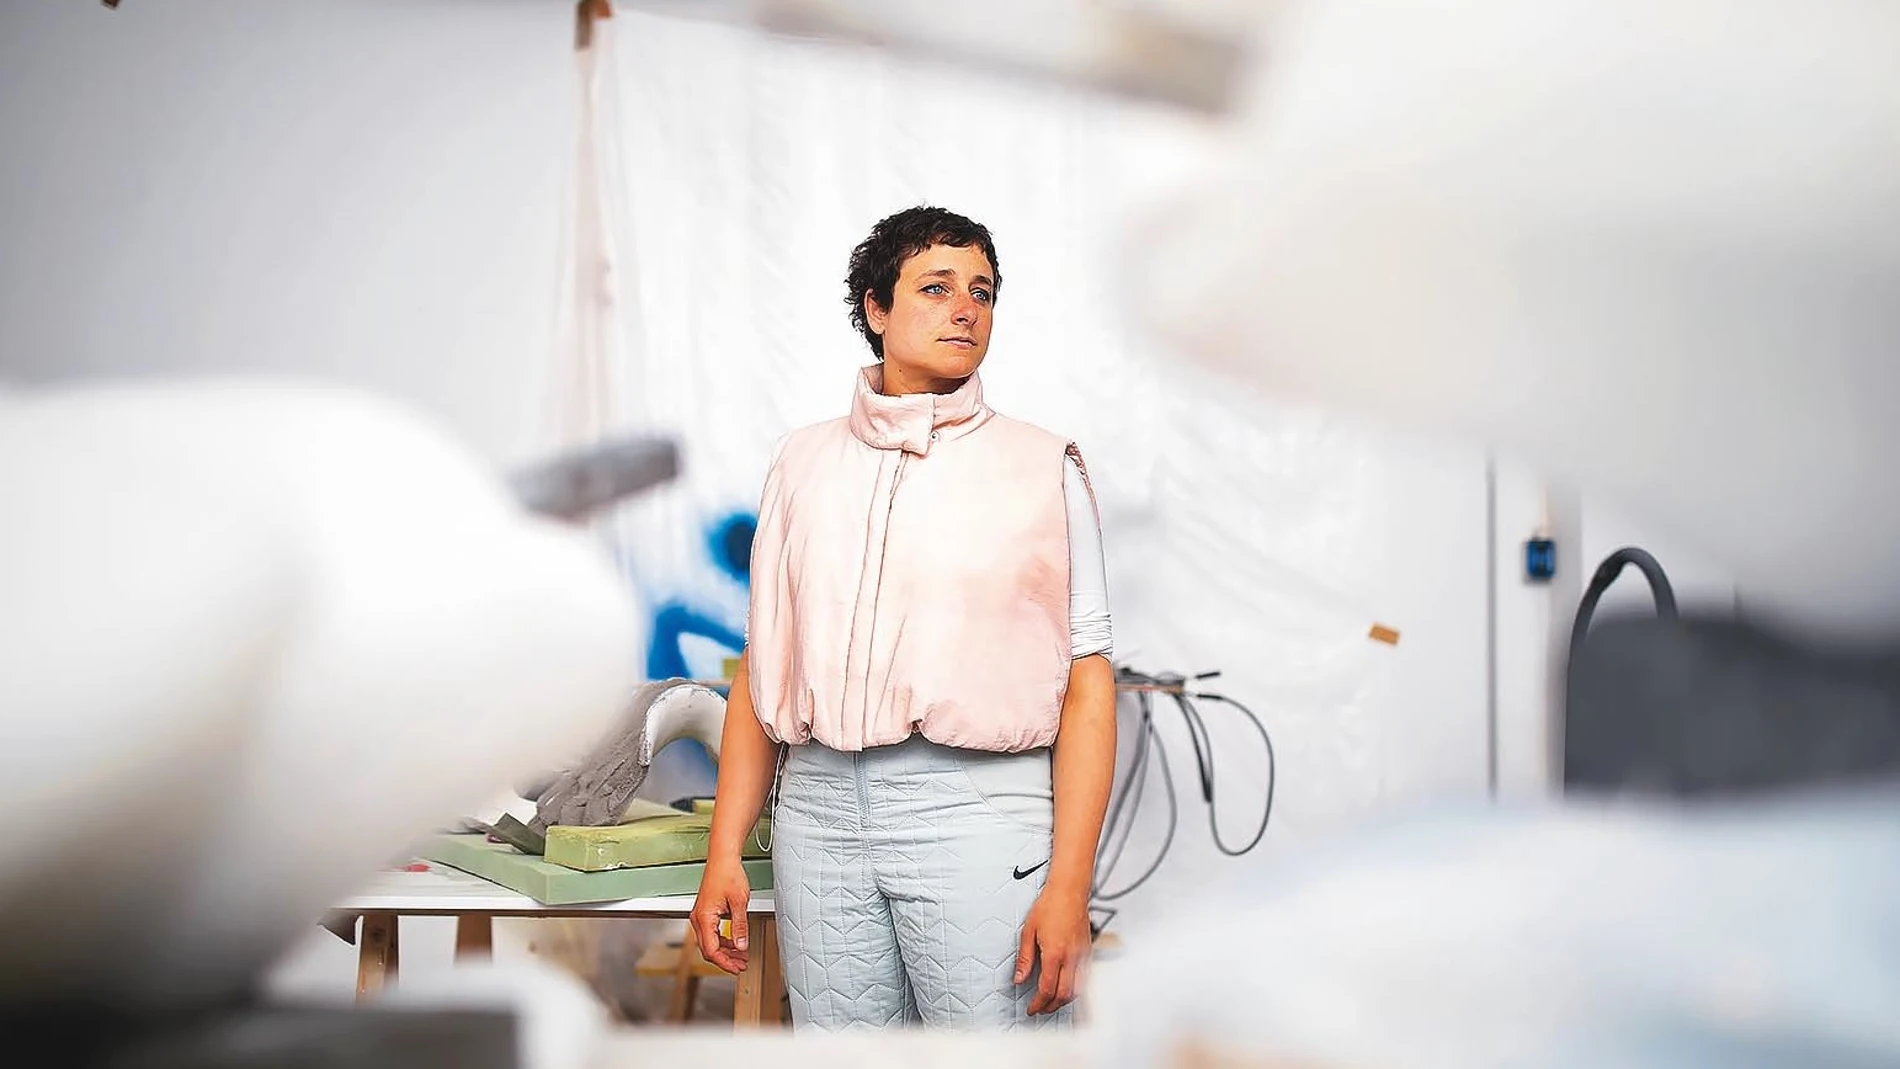 Tras Berlín, Liverpool o Estocolmo, la Bienal de Venecia recibe el trabajo de Teresa Solar